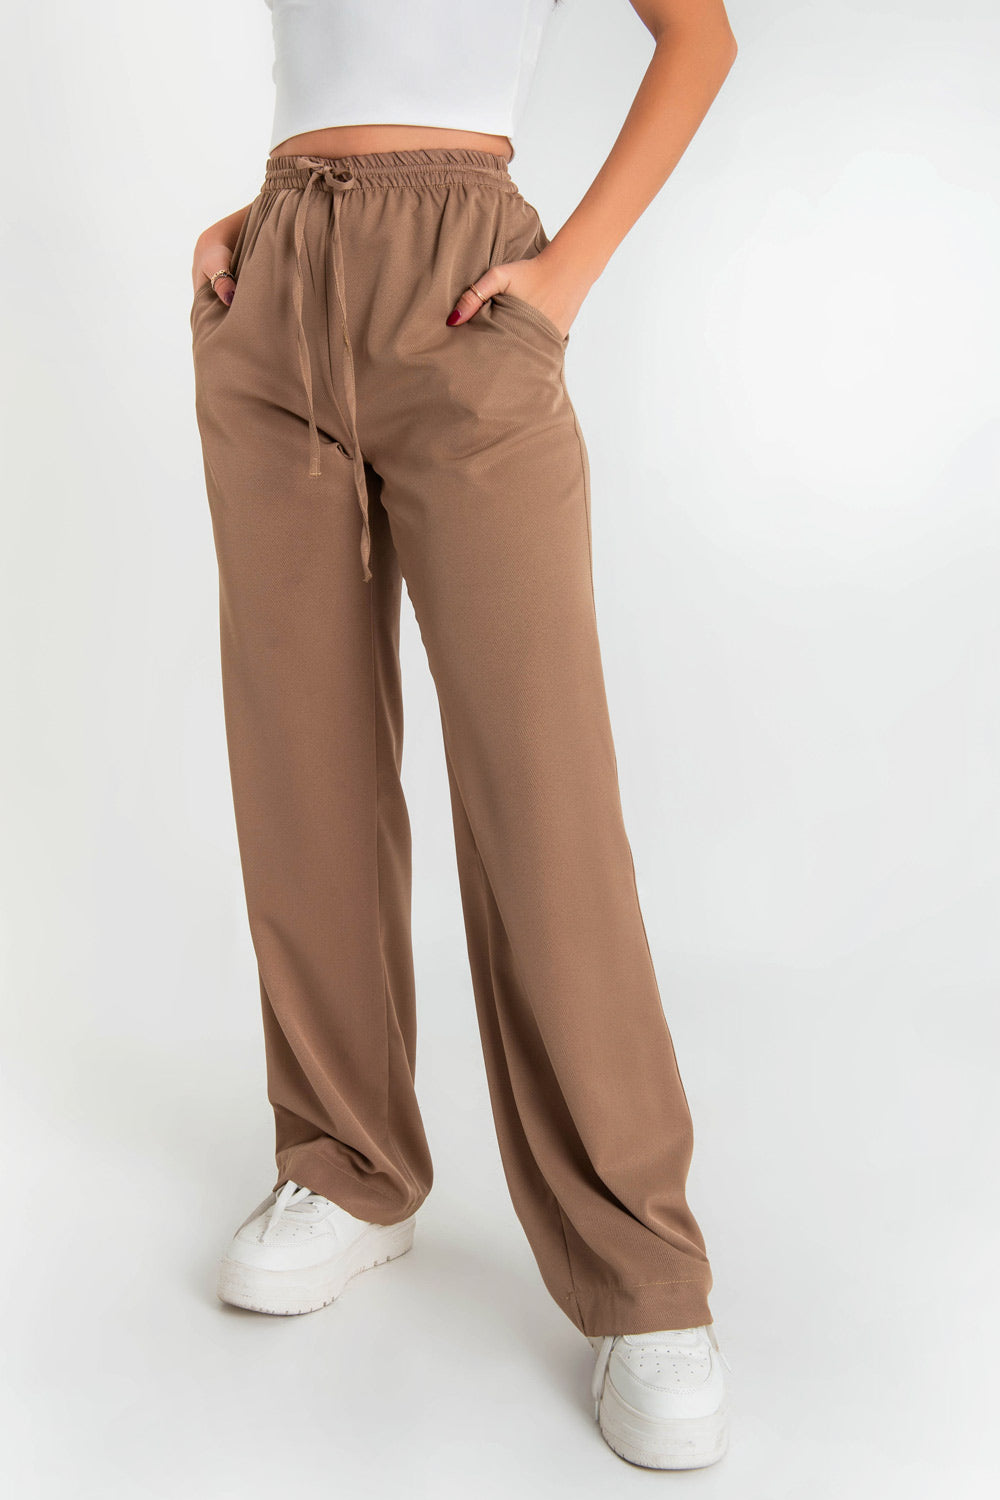 Pantalón de fit recto, cintura alta con pretina elástica, jareta frontal ajustable, bolsillos delanteros y traseros de parche.